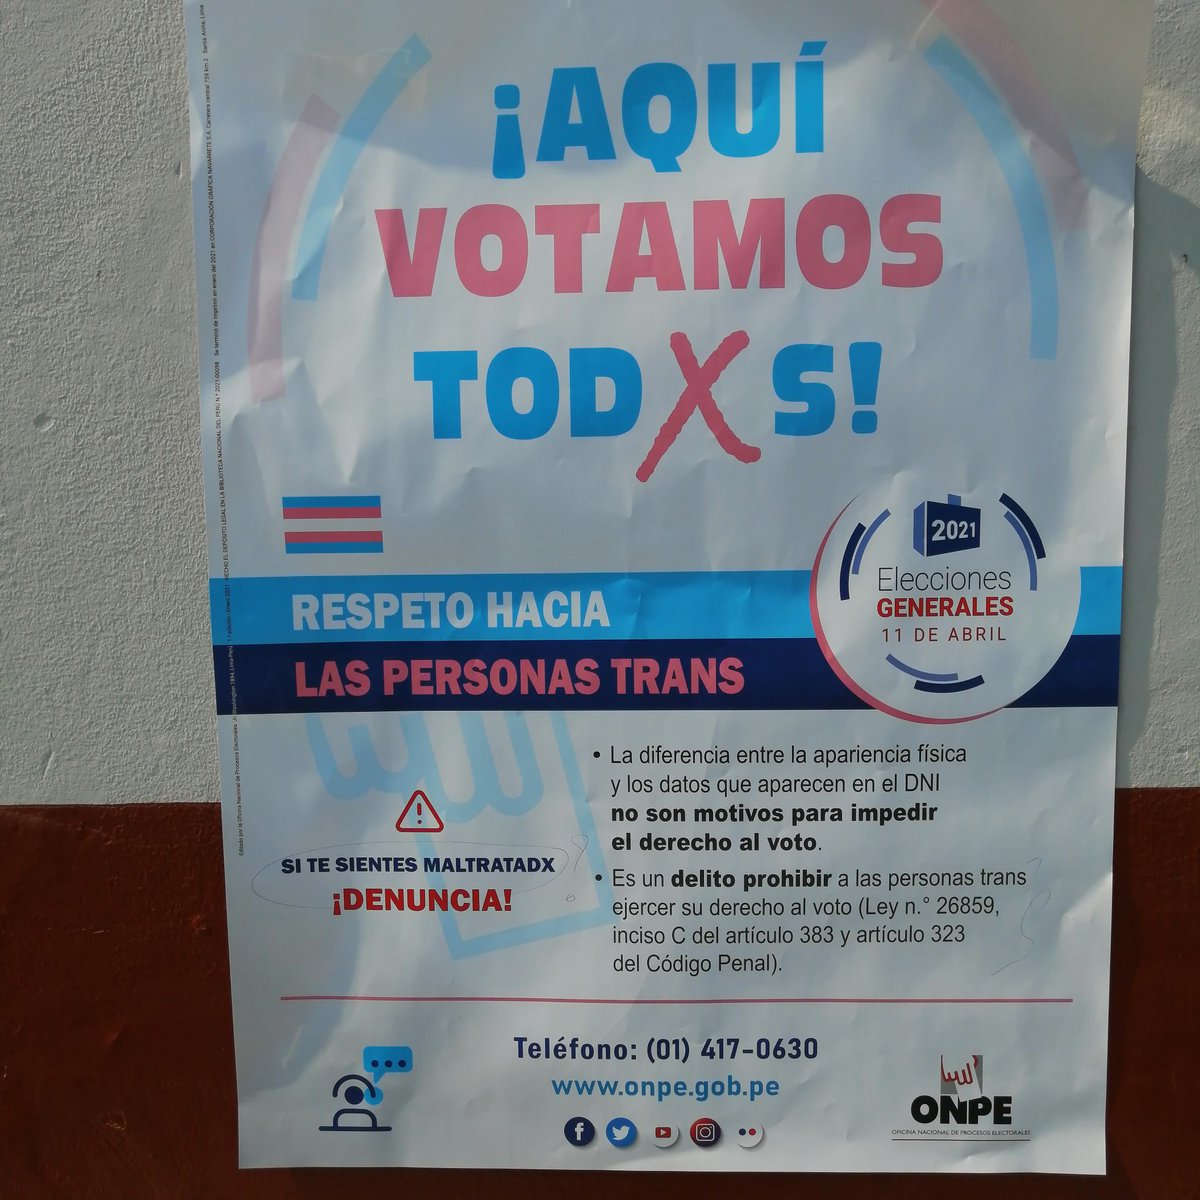 Este cartel fue encontrada en la I.E Dora Mayer en Bellavista (Callao). La ONPE promoviendo la ideología de género abiertamente y con DESCARO. ¡¡DEBEMOS EXTERMINAR ESTA PORQUERÍA!!! 
#RafaelLopezAliagaPresidente
#RafaelPresidente2021
#RafaelEnPrimeraVuelta #PorkyEnPrimeraVuelta